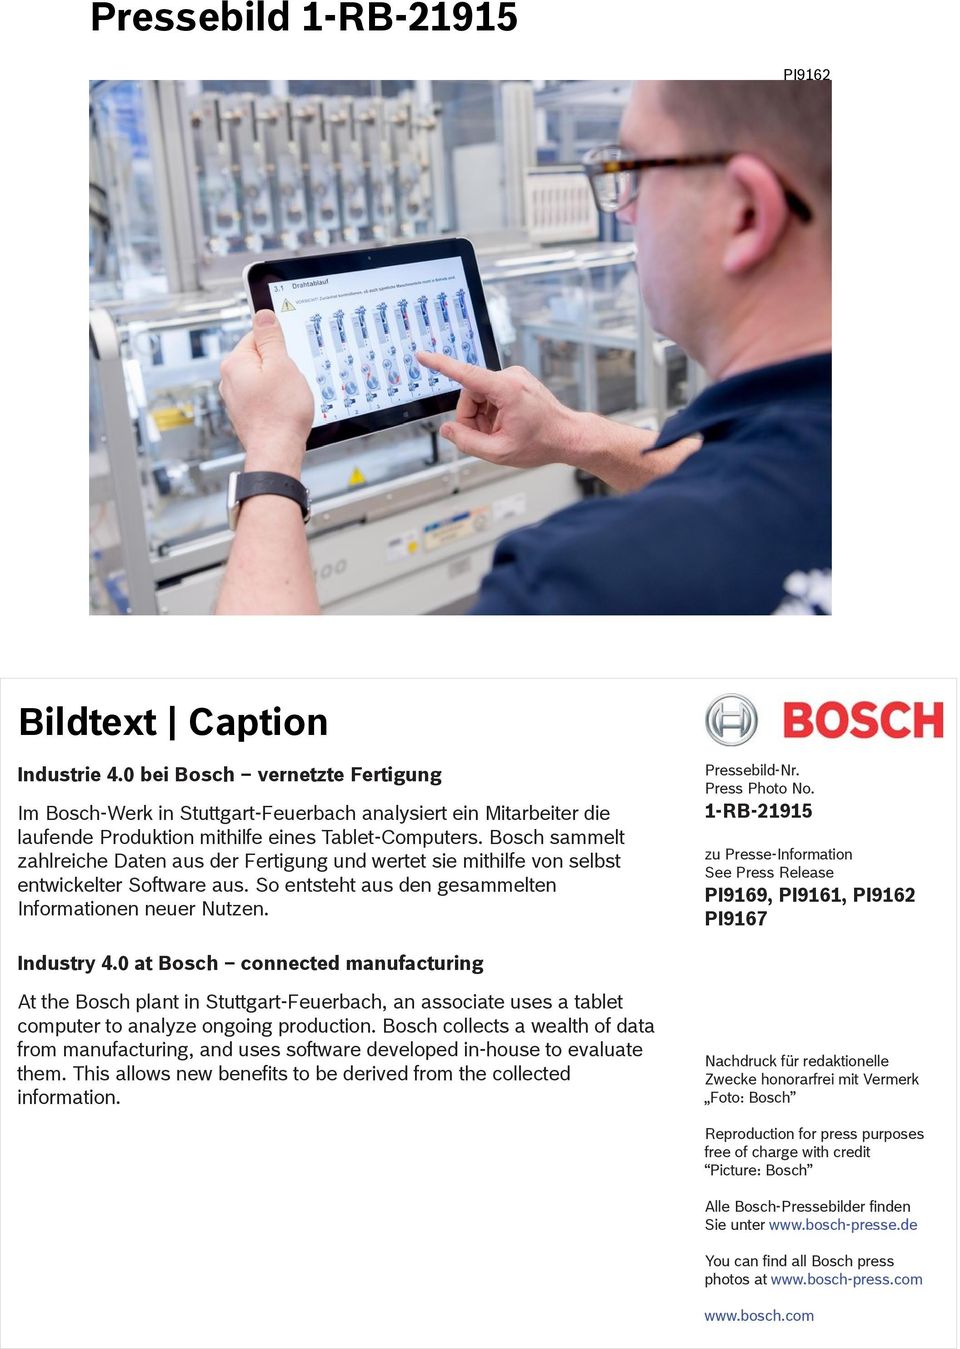 Bosch sammelt zahlreiche Daten aus der Fertigung und wertet sie mithilfe von selbst entwickelter Software aus. So entsteht aus den gesammelten Informationen neuer Nutzen.